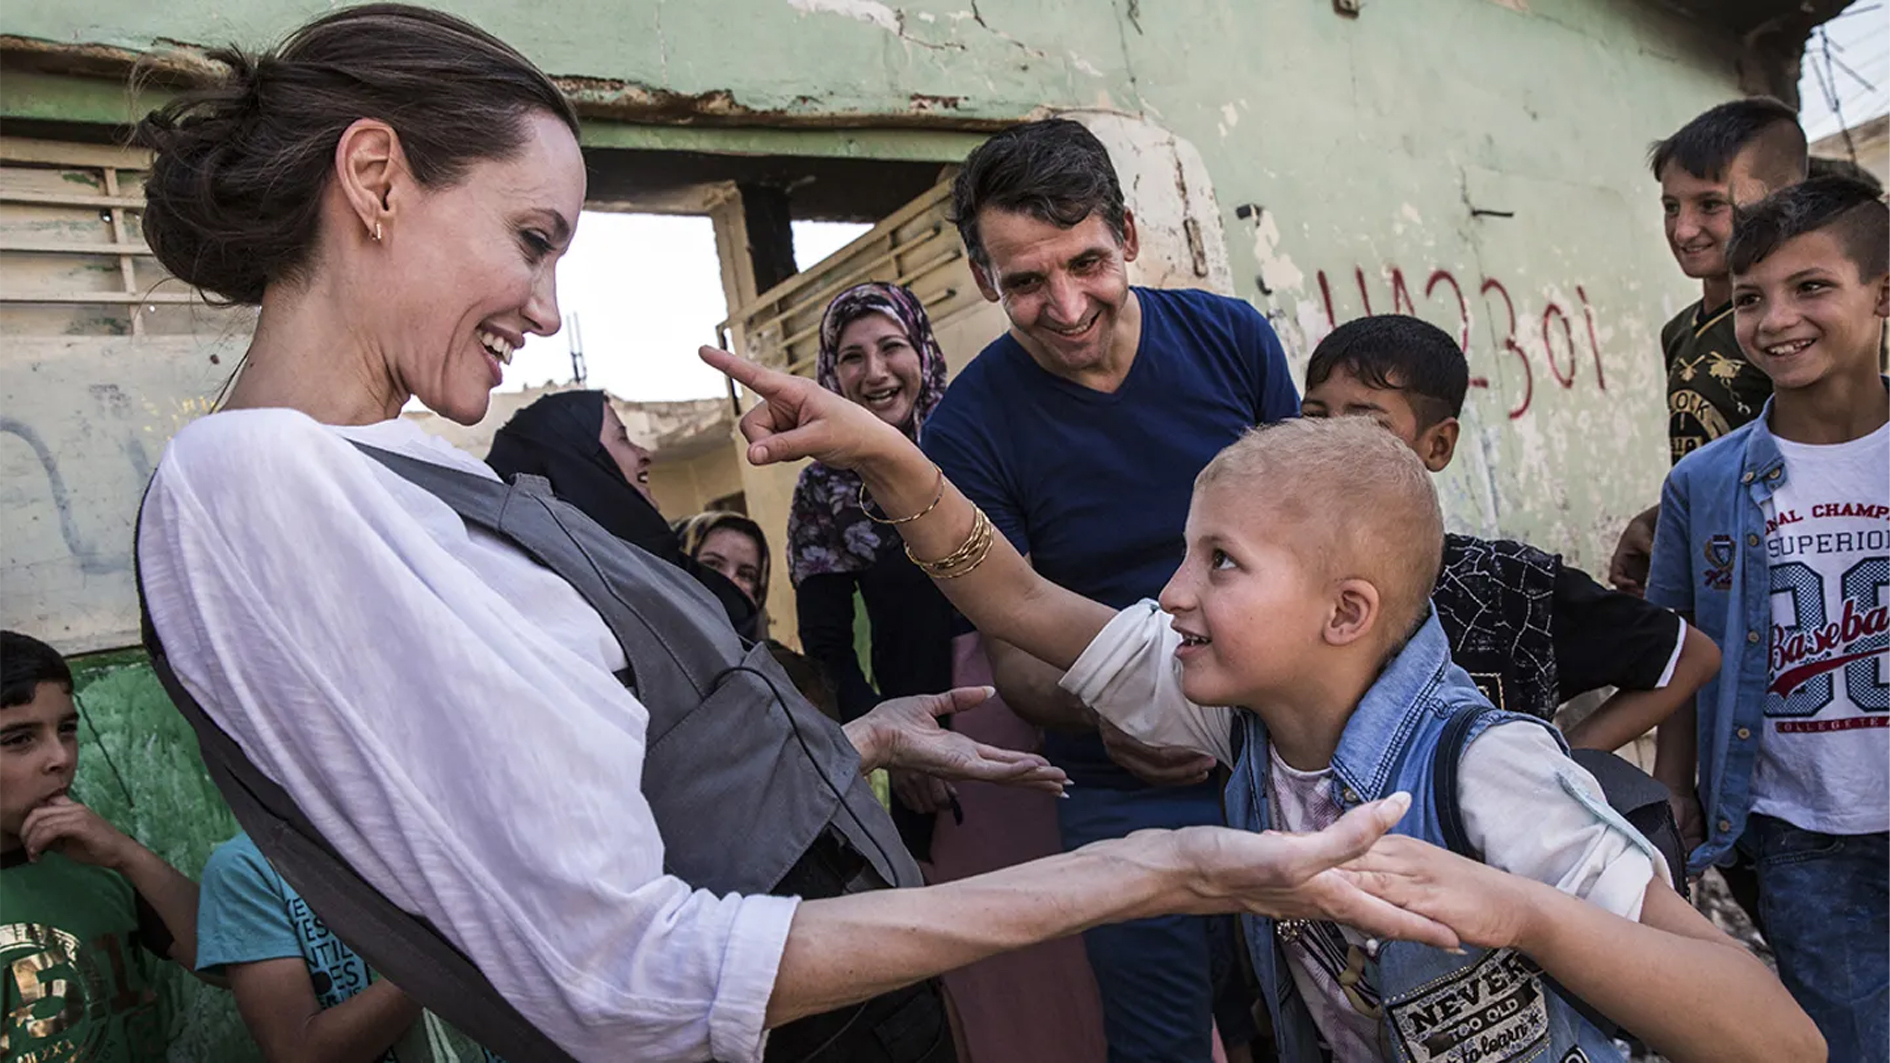 أنجلينا جولي تترك منصبها كمبعوثة للأمم المتحدة للاجئين بعد 21 عامًا